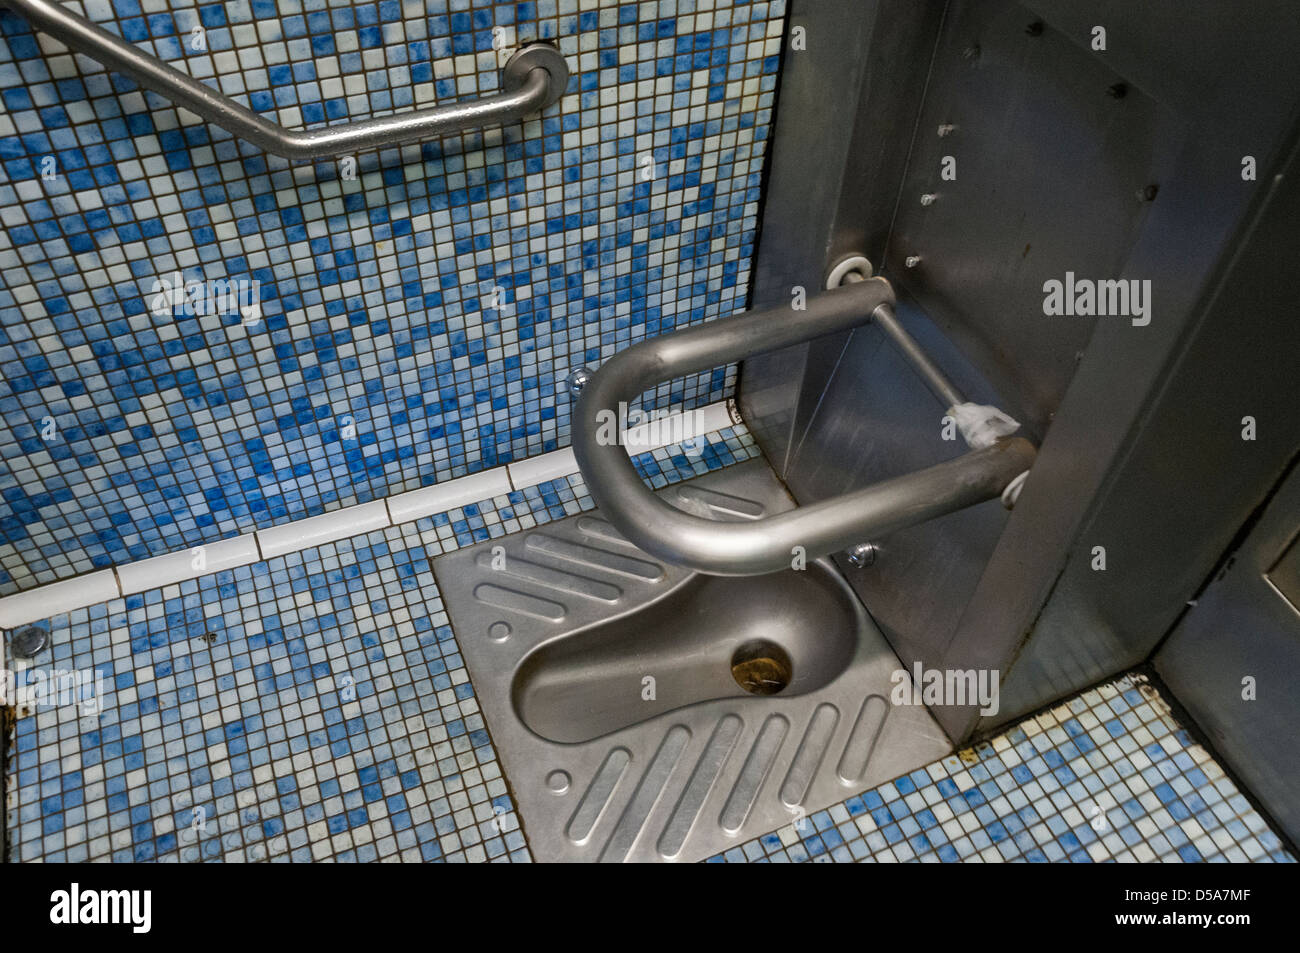 french public toilet Stock Photo